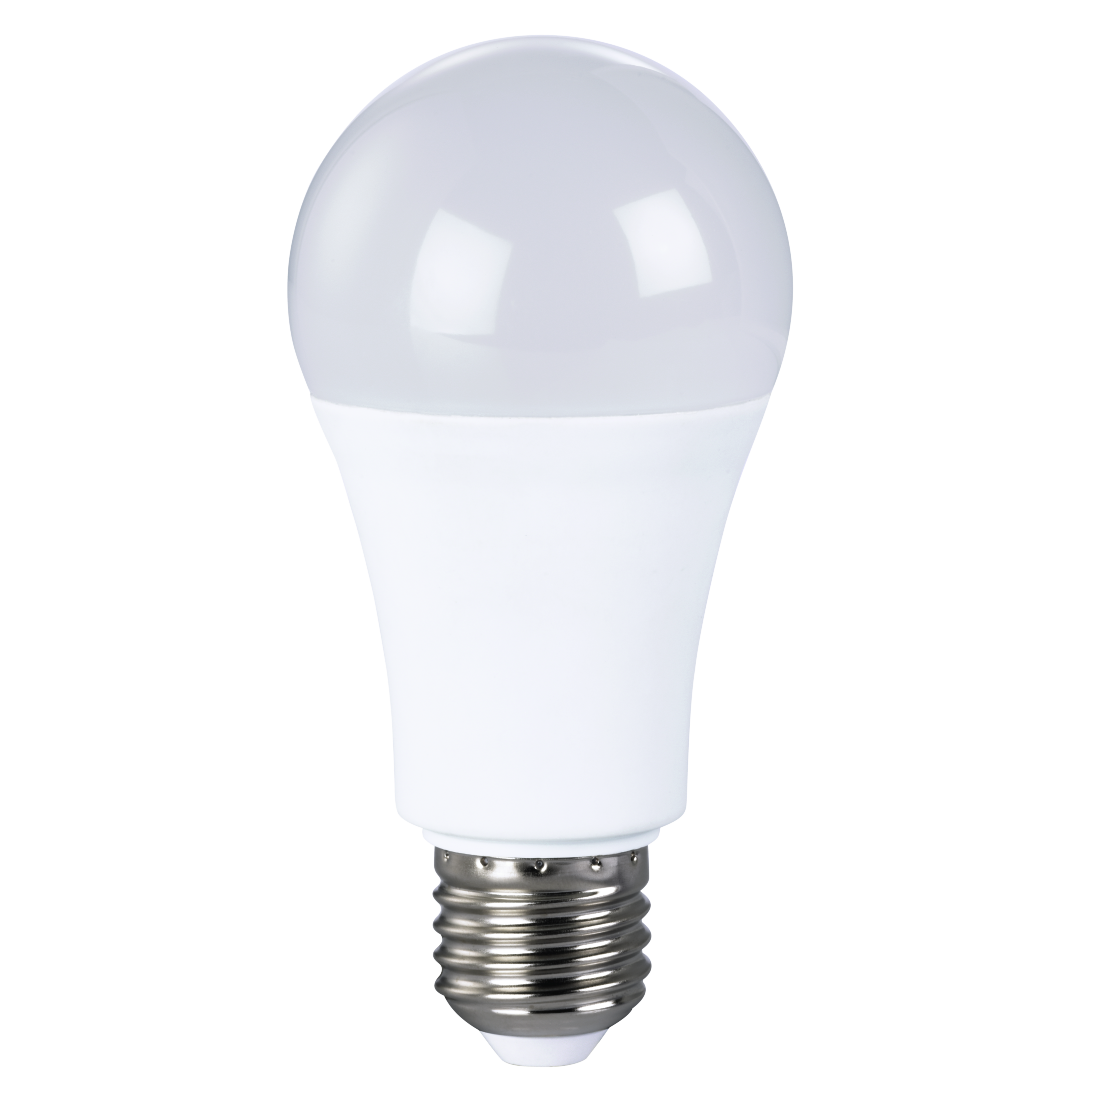 abx Druckfähige Abbildung - Xavax, LED-Lampe, E27, 800lm ersetzt 60W, Glühlampe, Warm-/Neutralweiß/Tageslicht